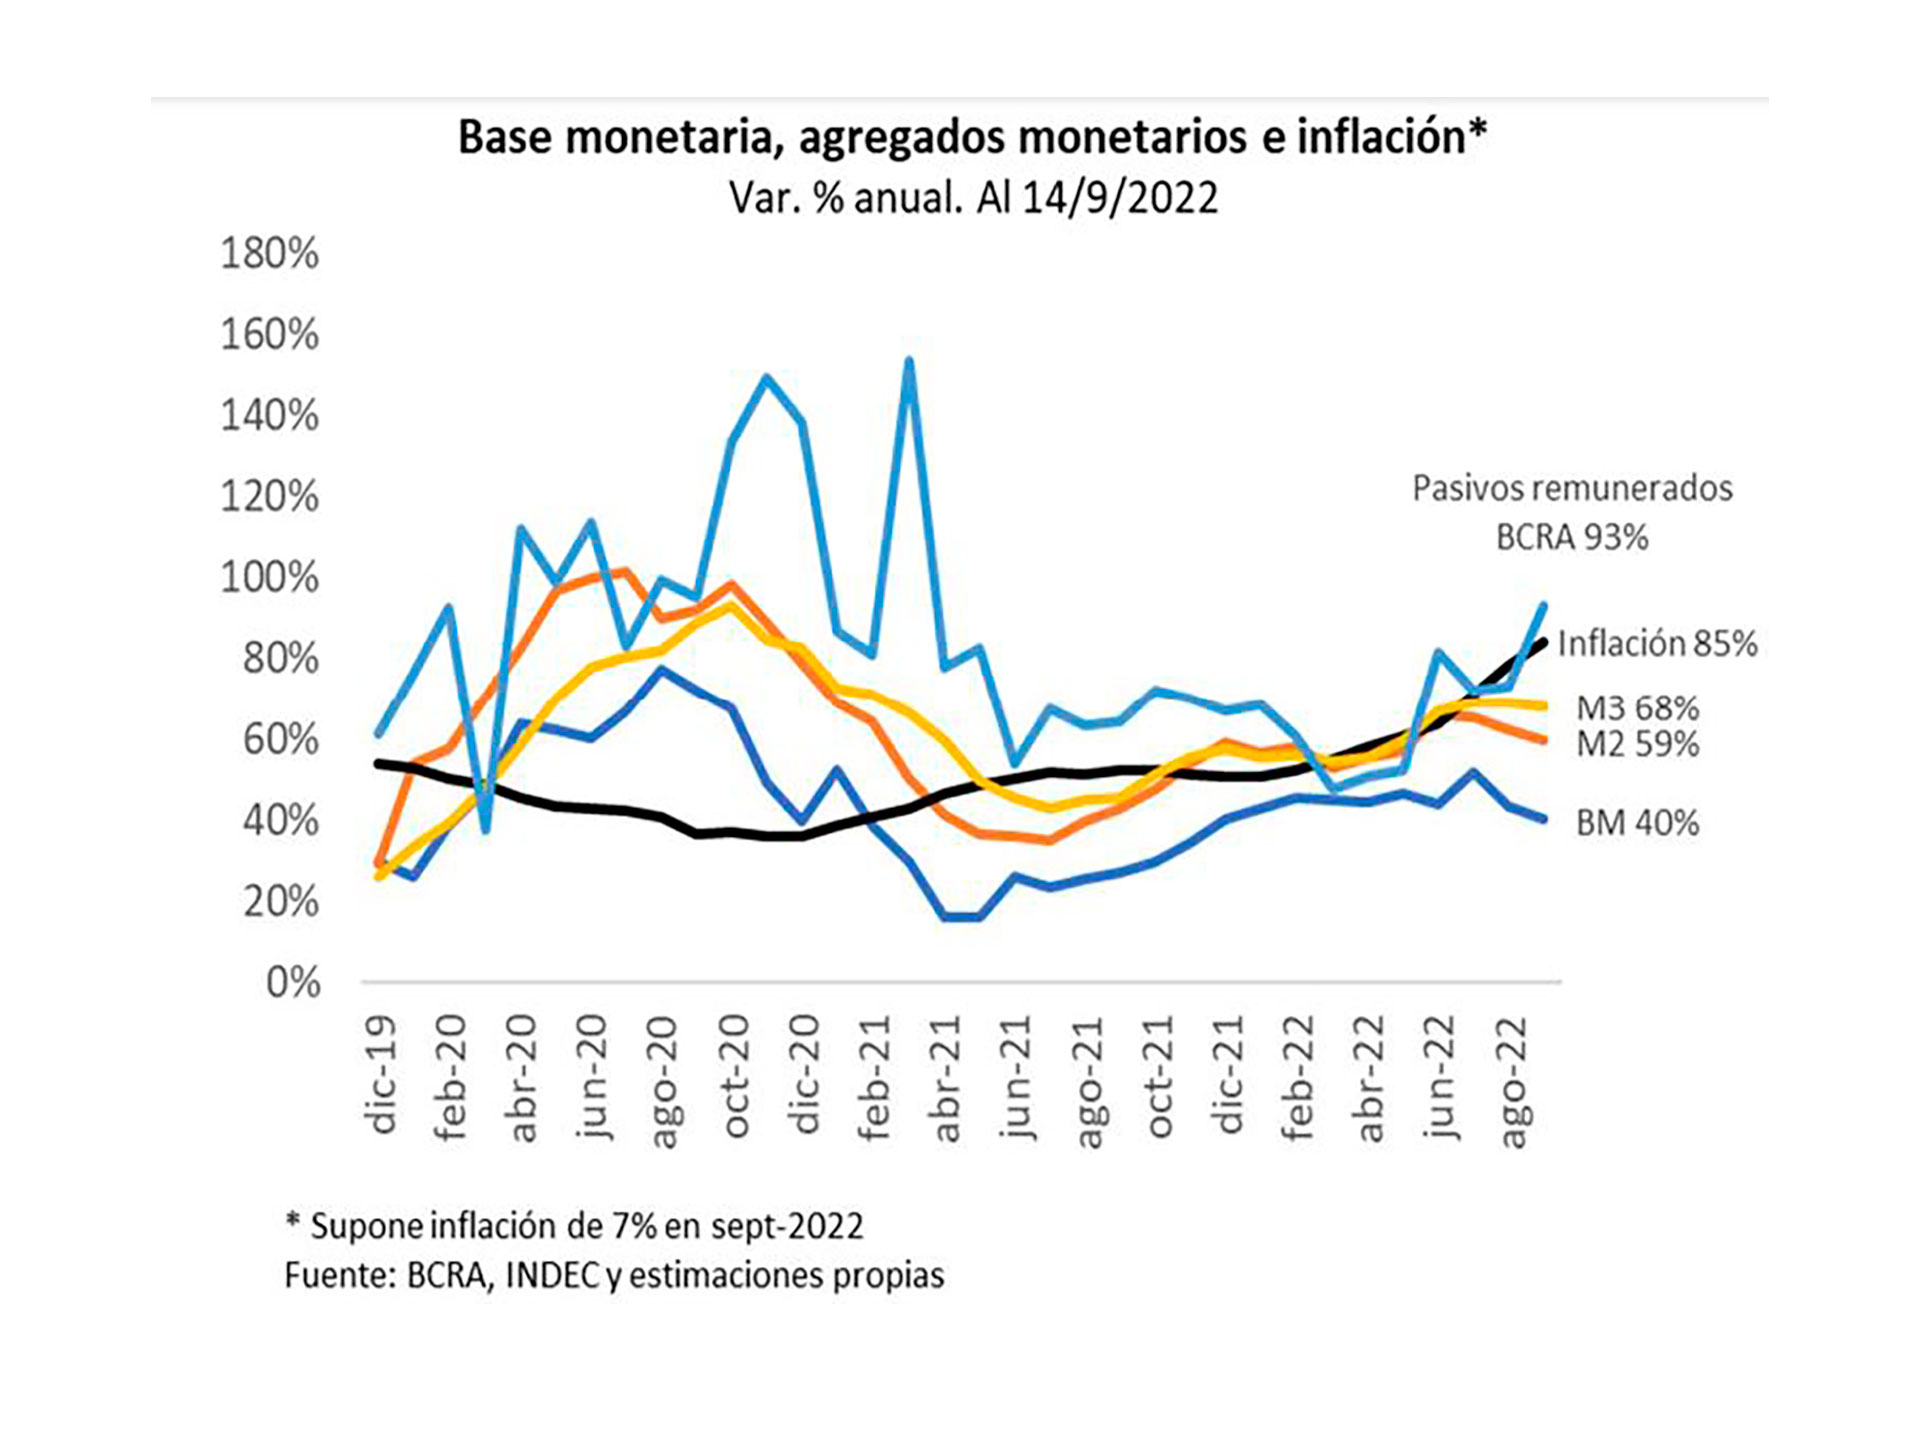 El gráfico ilustra la evolución de la Base y los agregados monetarios y la tasa de inflación 